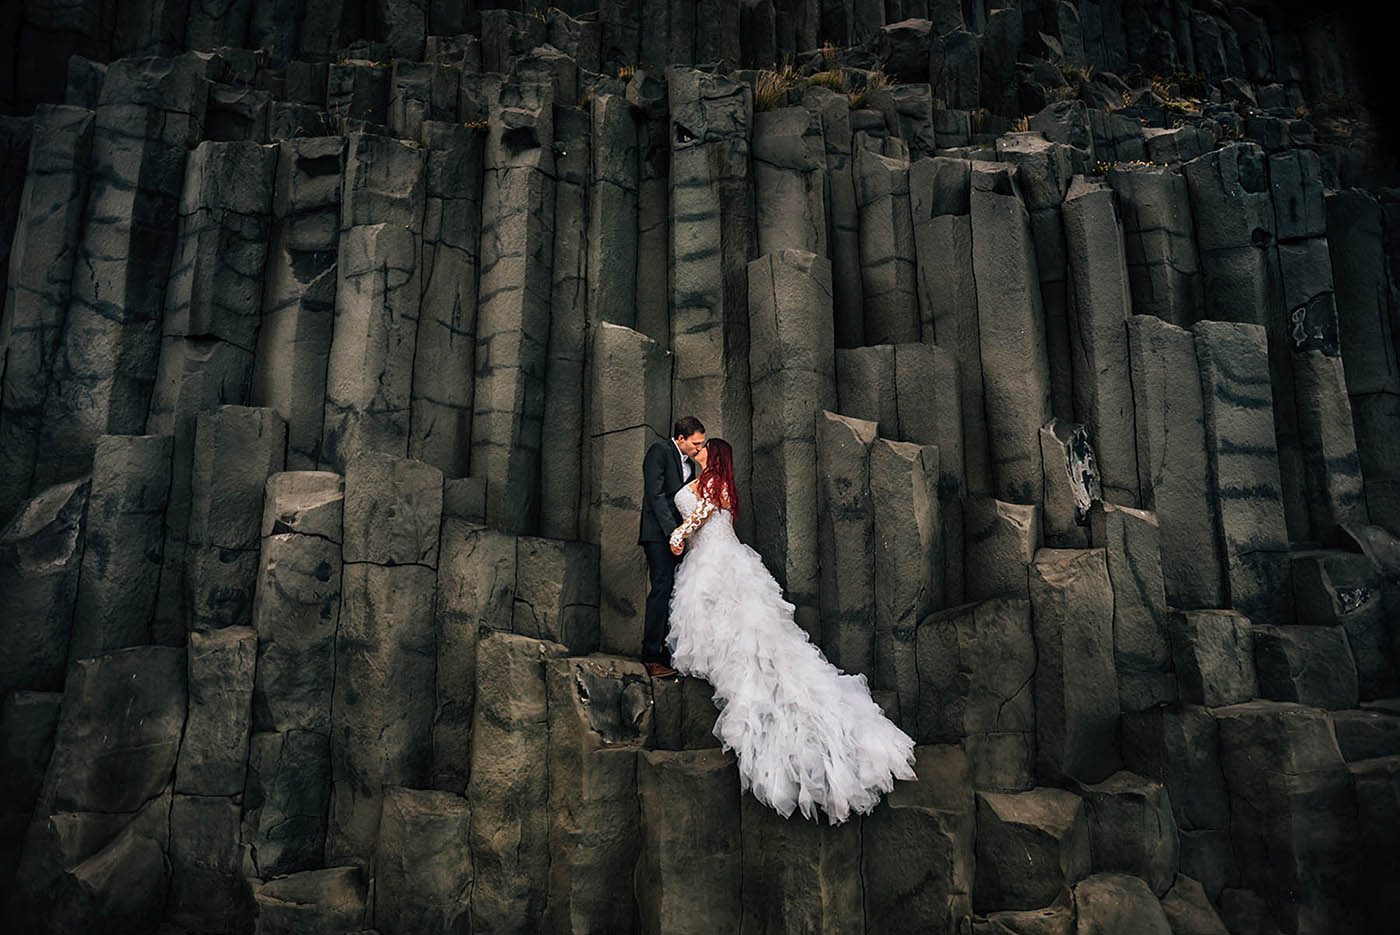 Wedding Photos on Basalt Columns at Reynisfjara Black Sand Beach Iceland